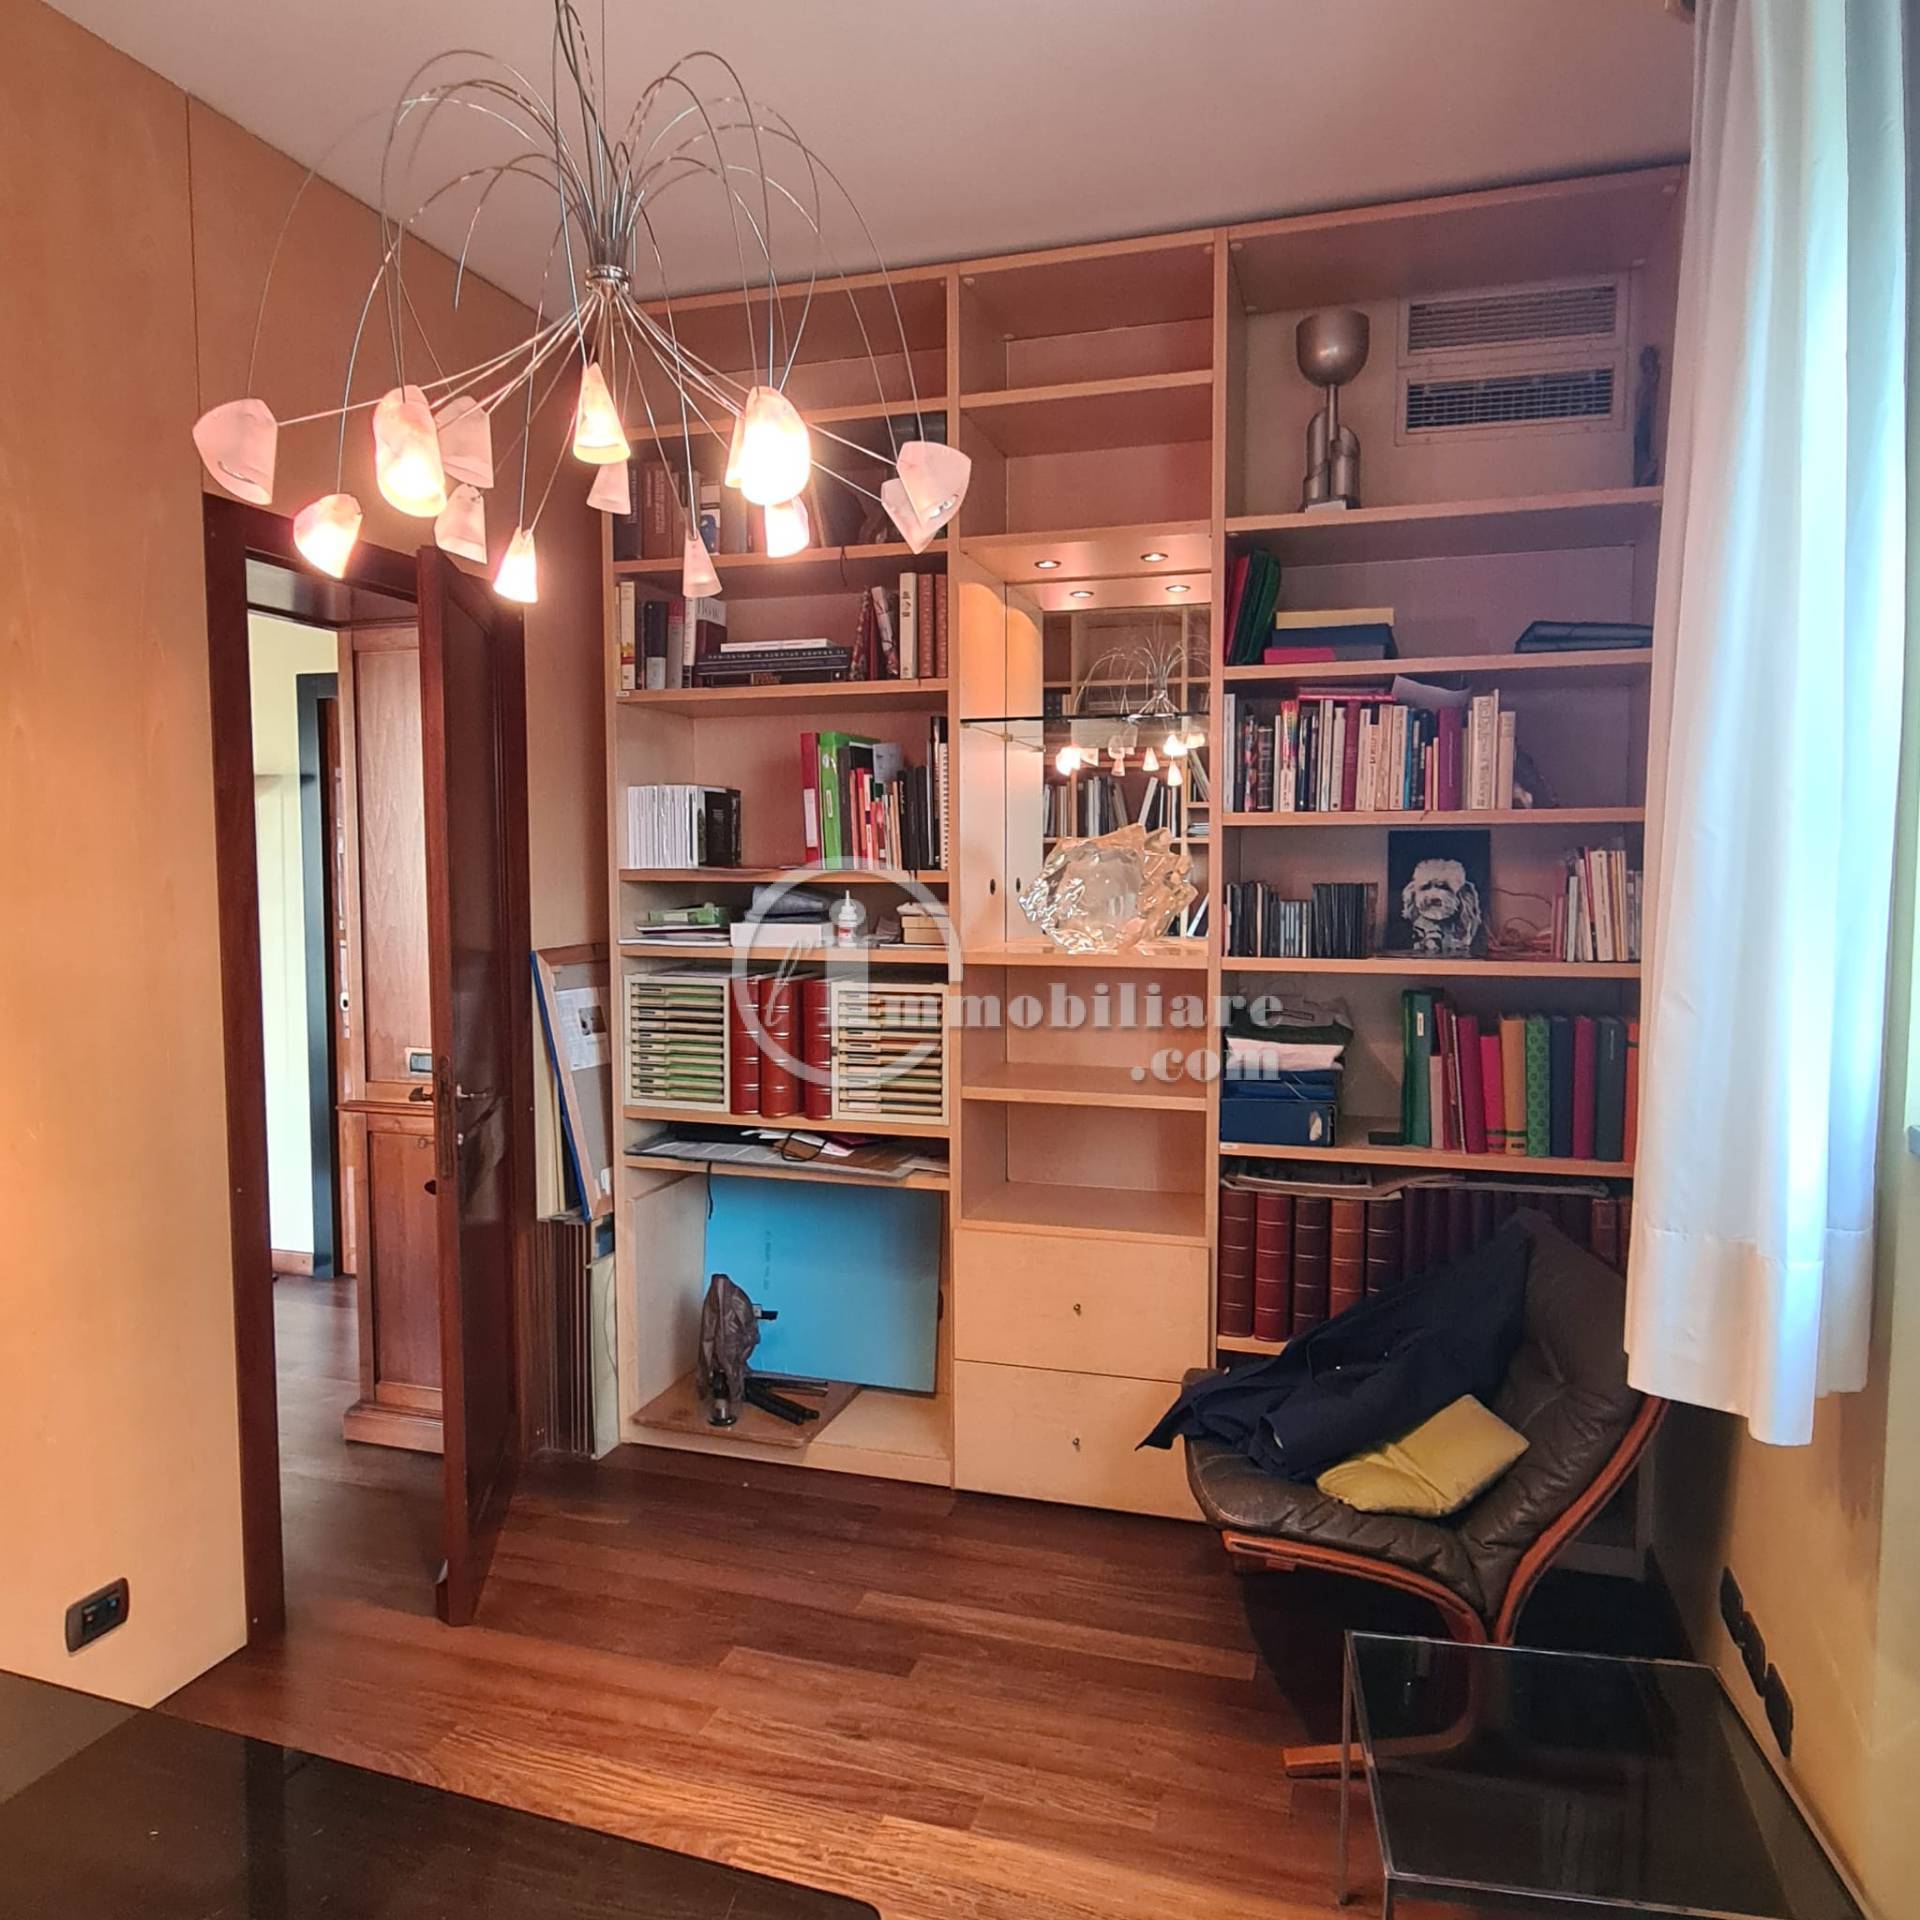 Appartamento in Vendita a Milano: 5 locali, 220 mq - Foto 12